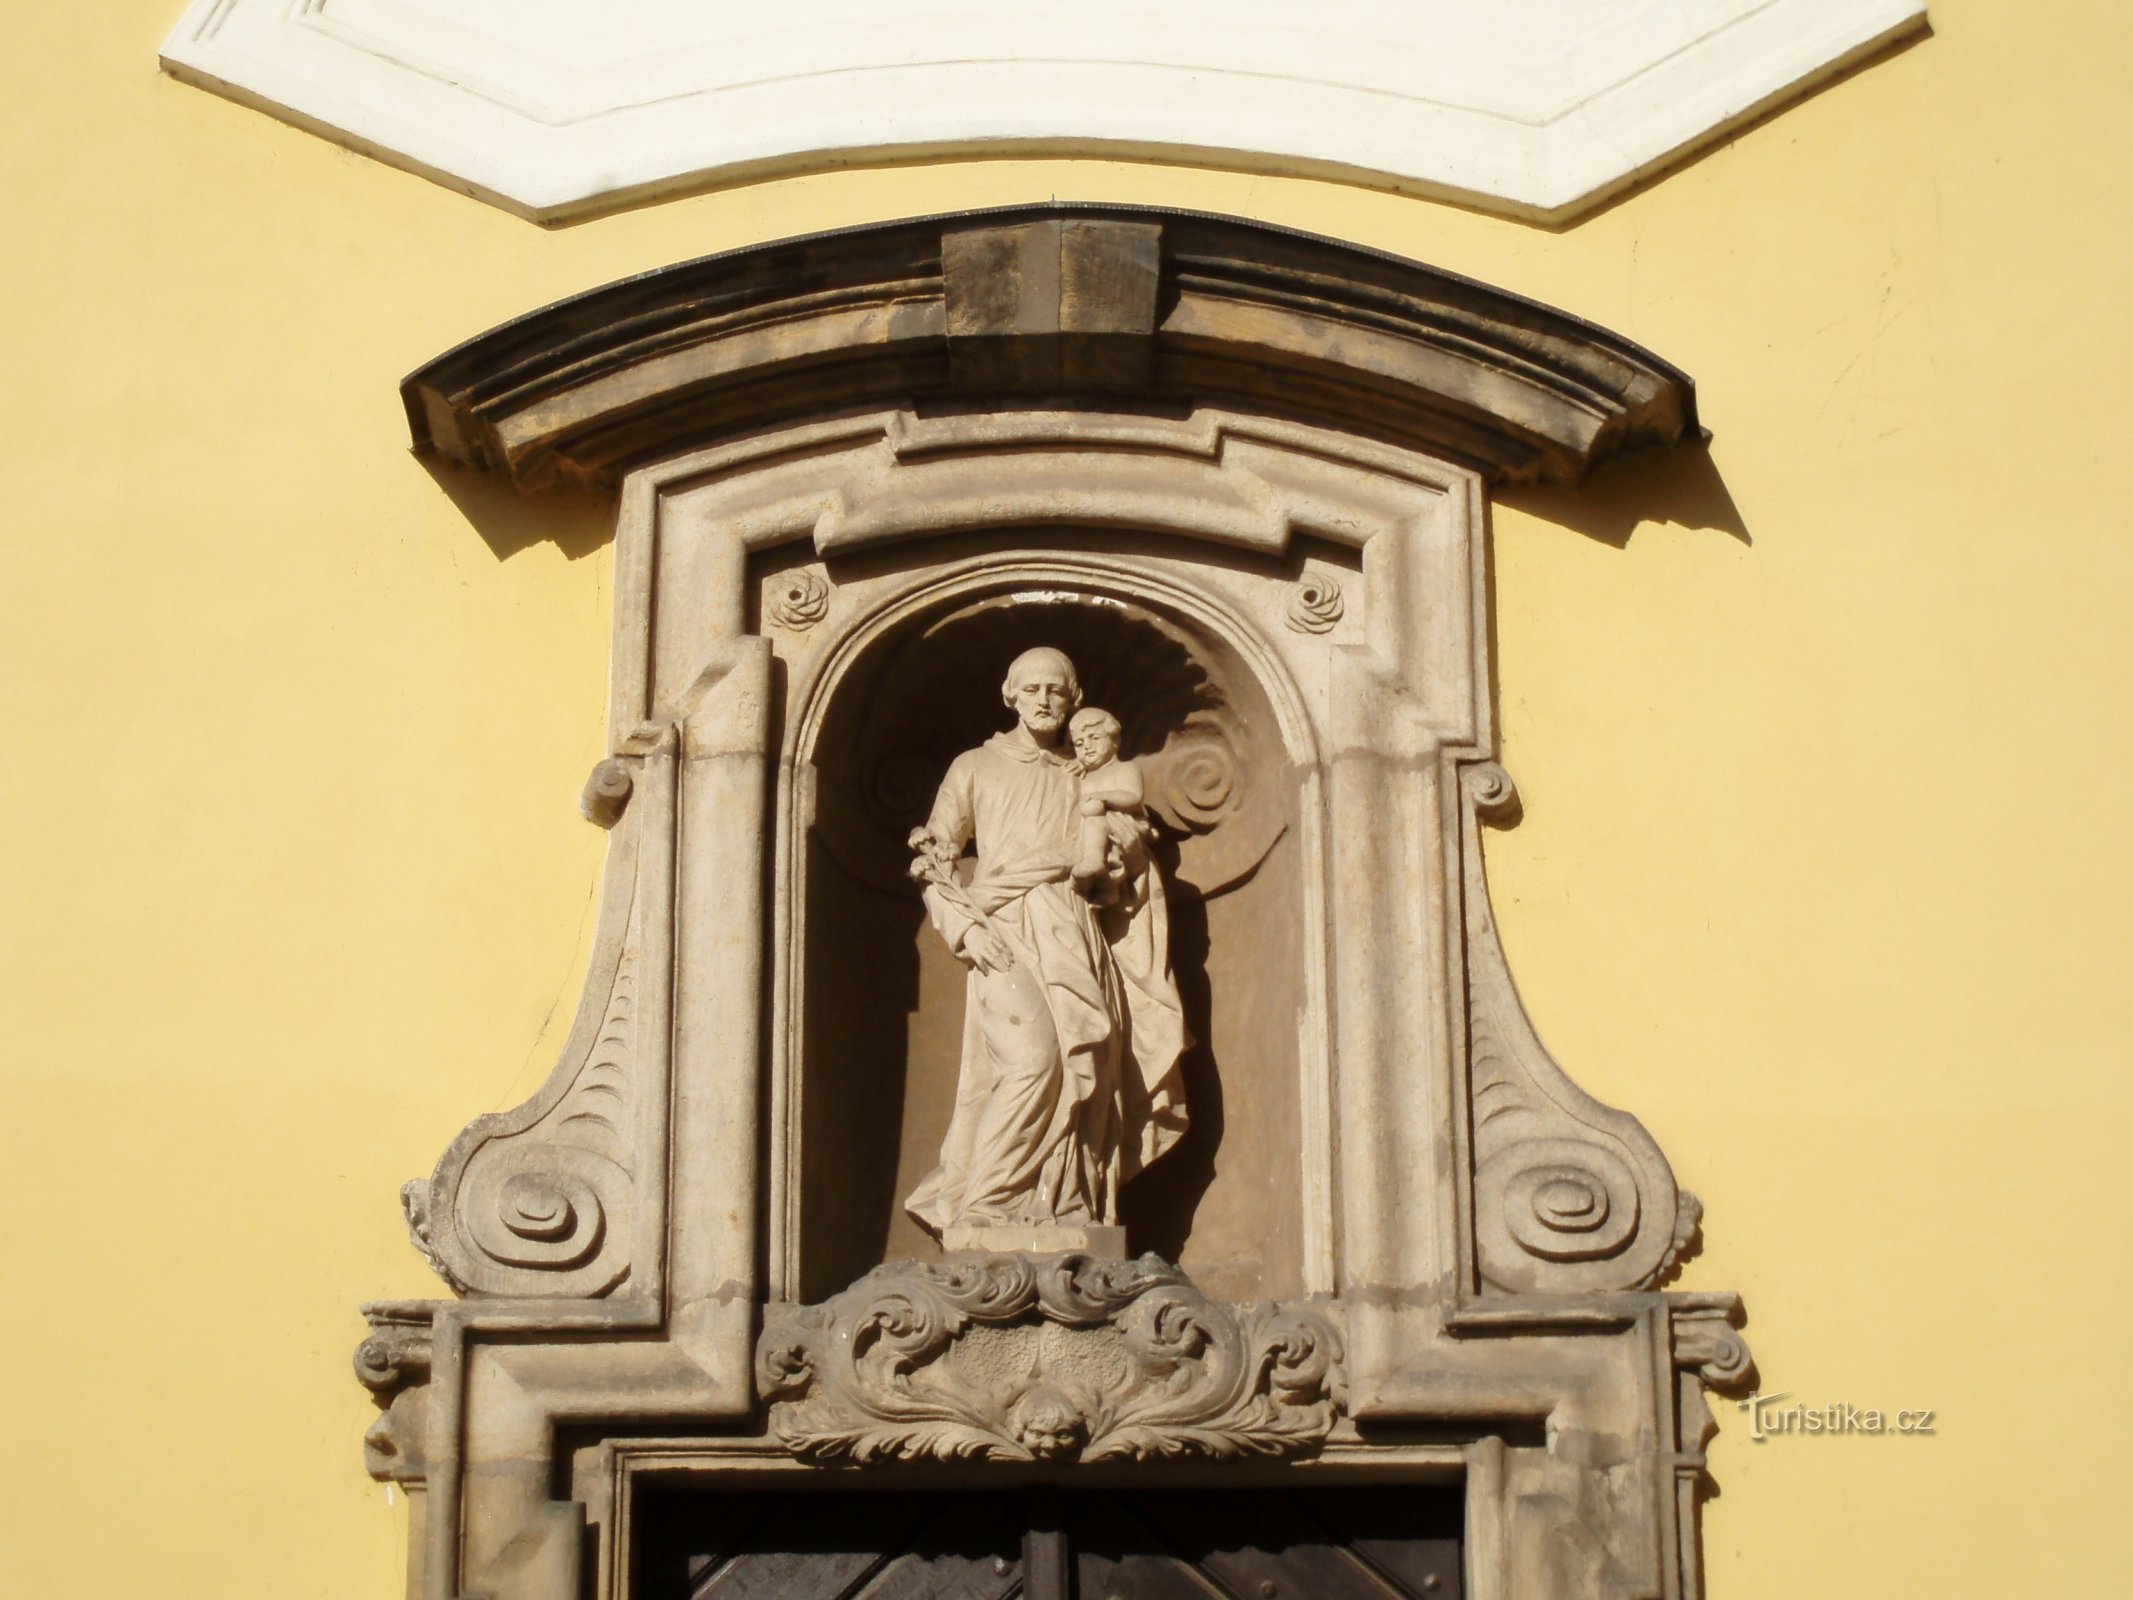 Изображение св. Иосифа над входом в часовню того же святого (Градец Кралове, 21.6.2009)